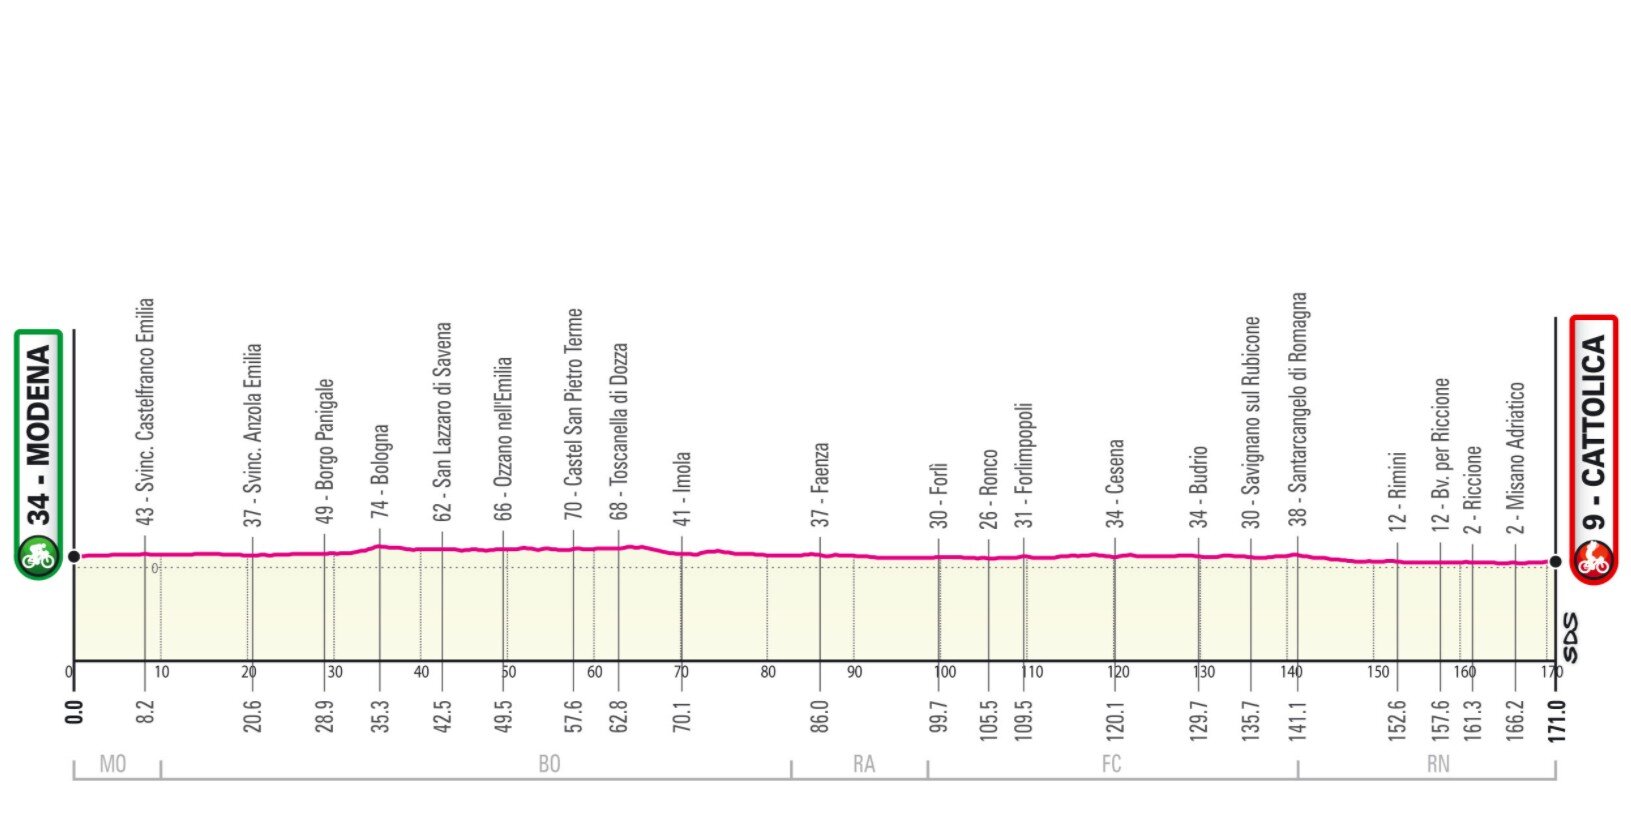 Stage 5 Giro Italia 2021